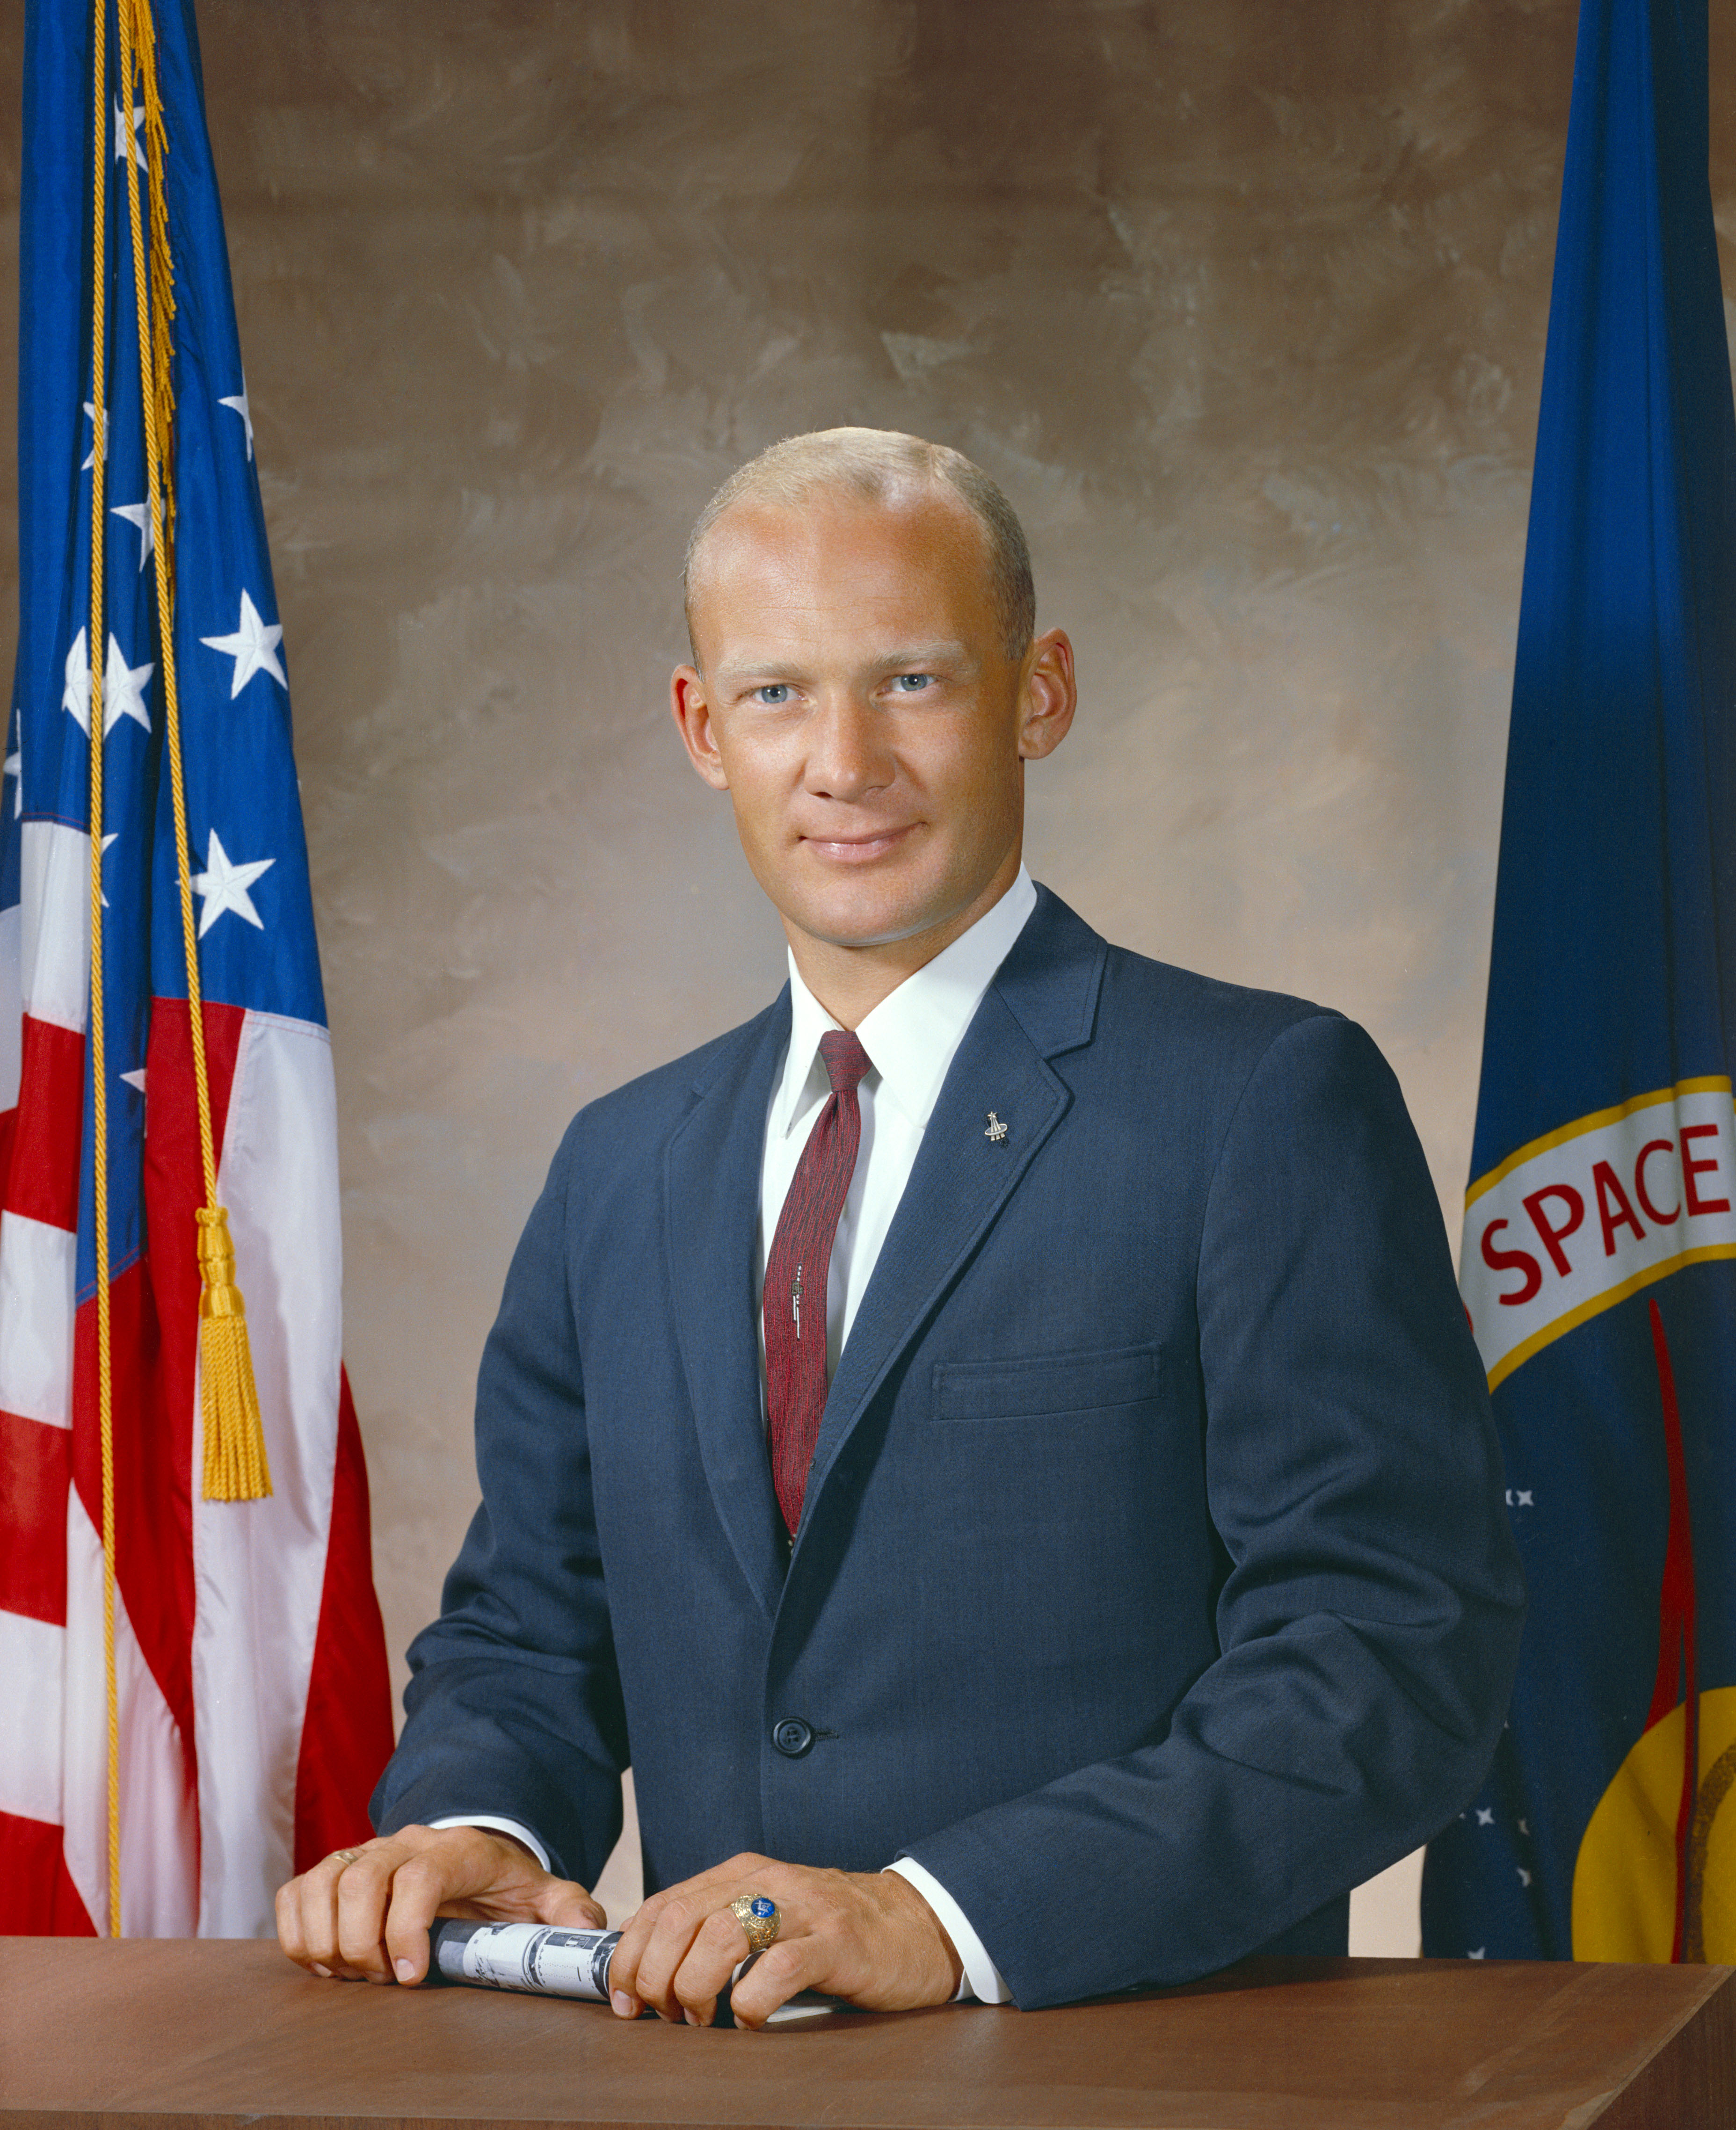 Group 3 astronaut Edwin E. “Buzz” Aldrin